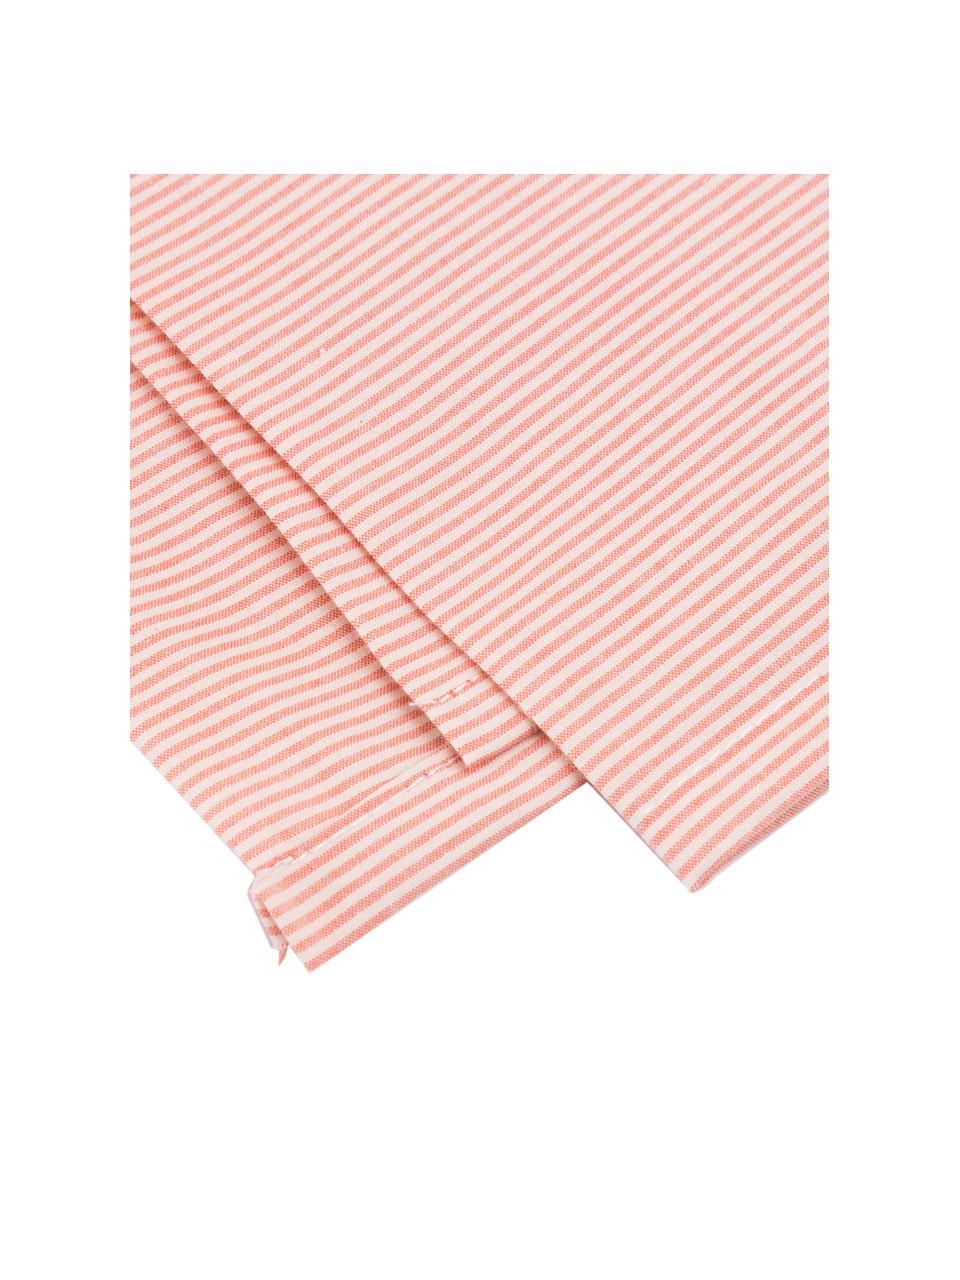 Parure copripiumino in cotone Stripes, Terracotta, crema, 155 x 260 cm + 1 federa + 1 lenzuolo con angoli